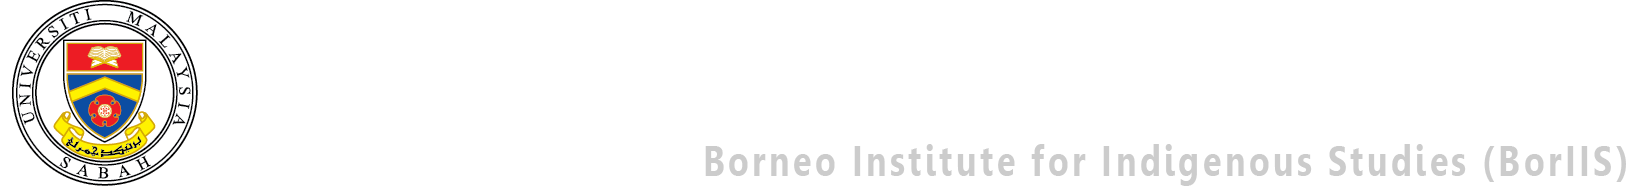 Borneo Institute for Indigenous Studies (BorIIS), UMS